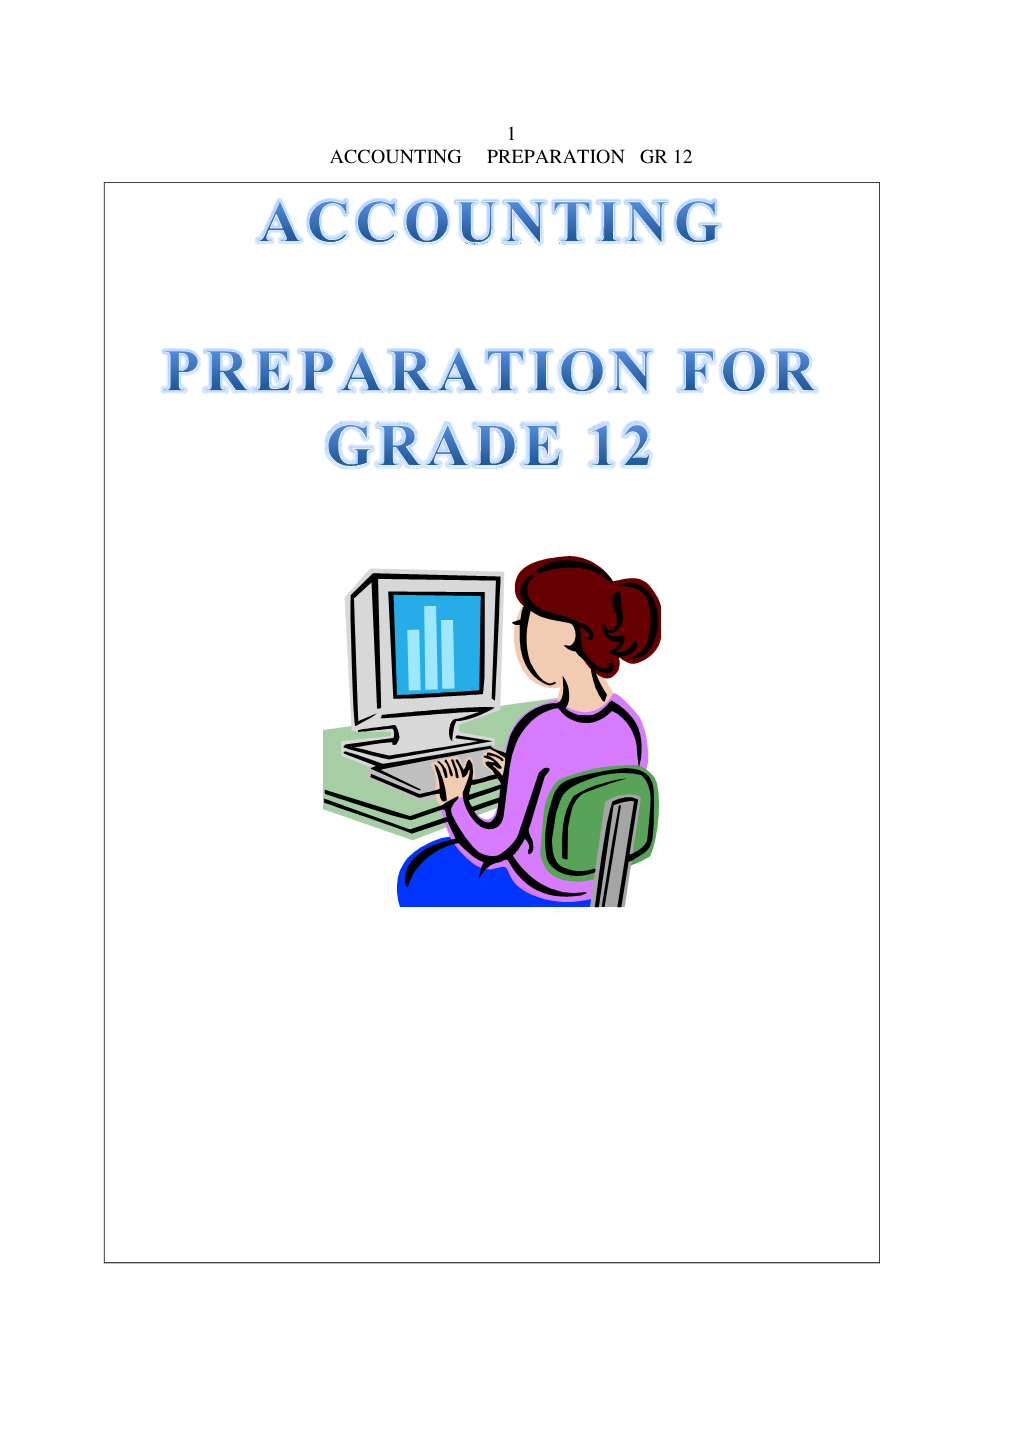 1 Accounting Preparation Gr 12 2 Accounting Preparation Gr 12